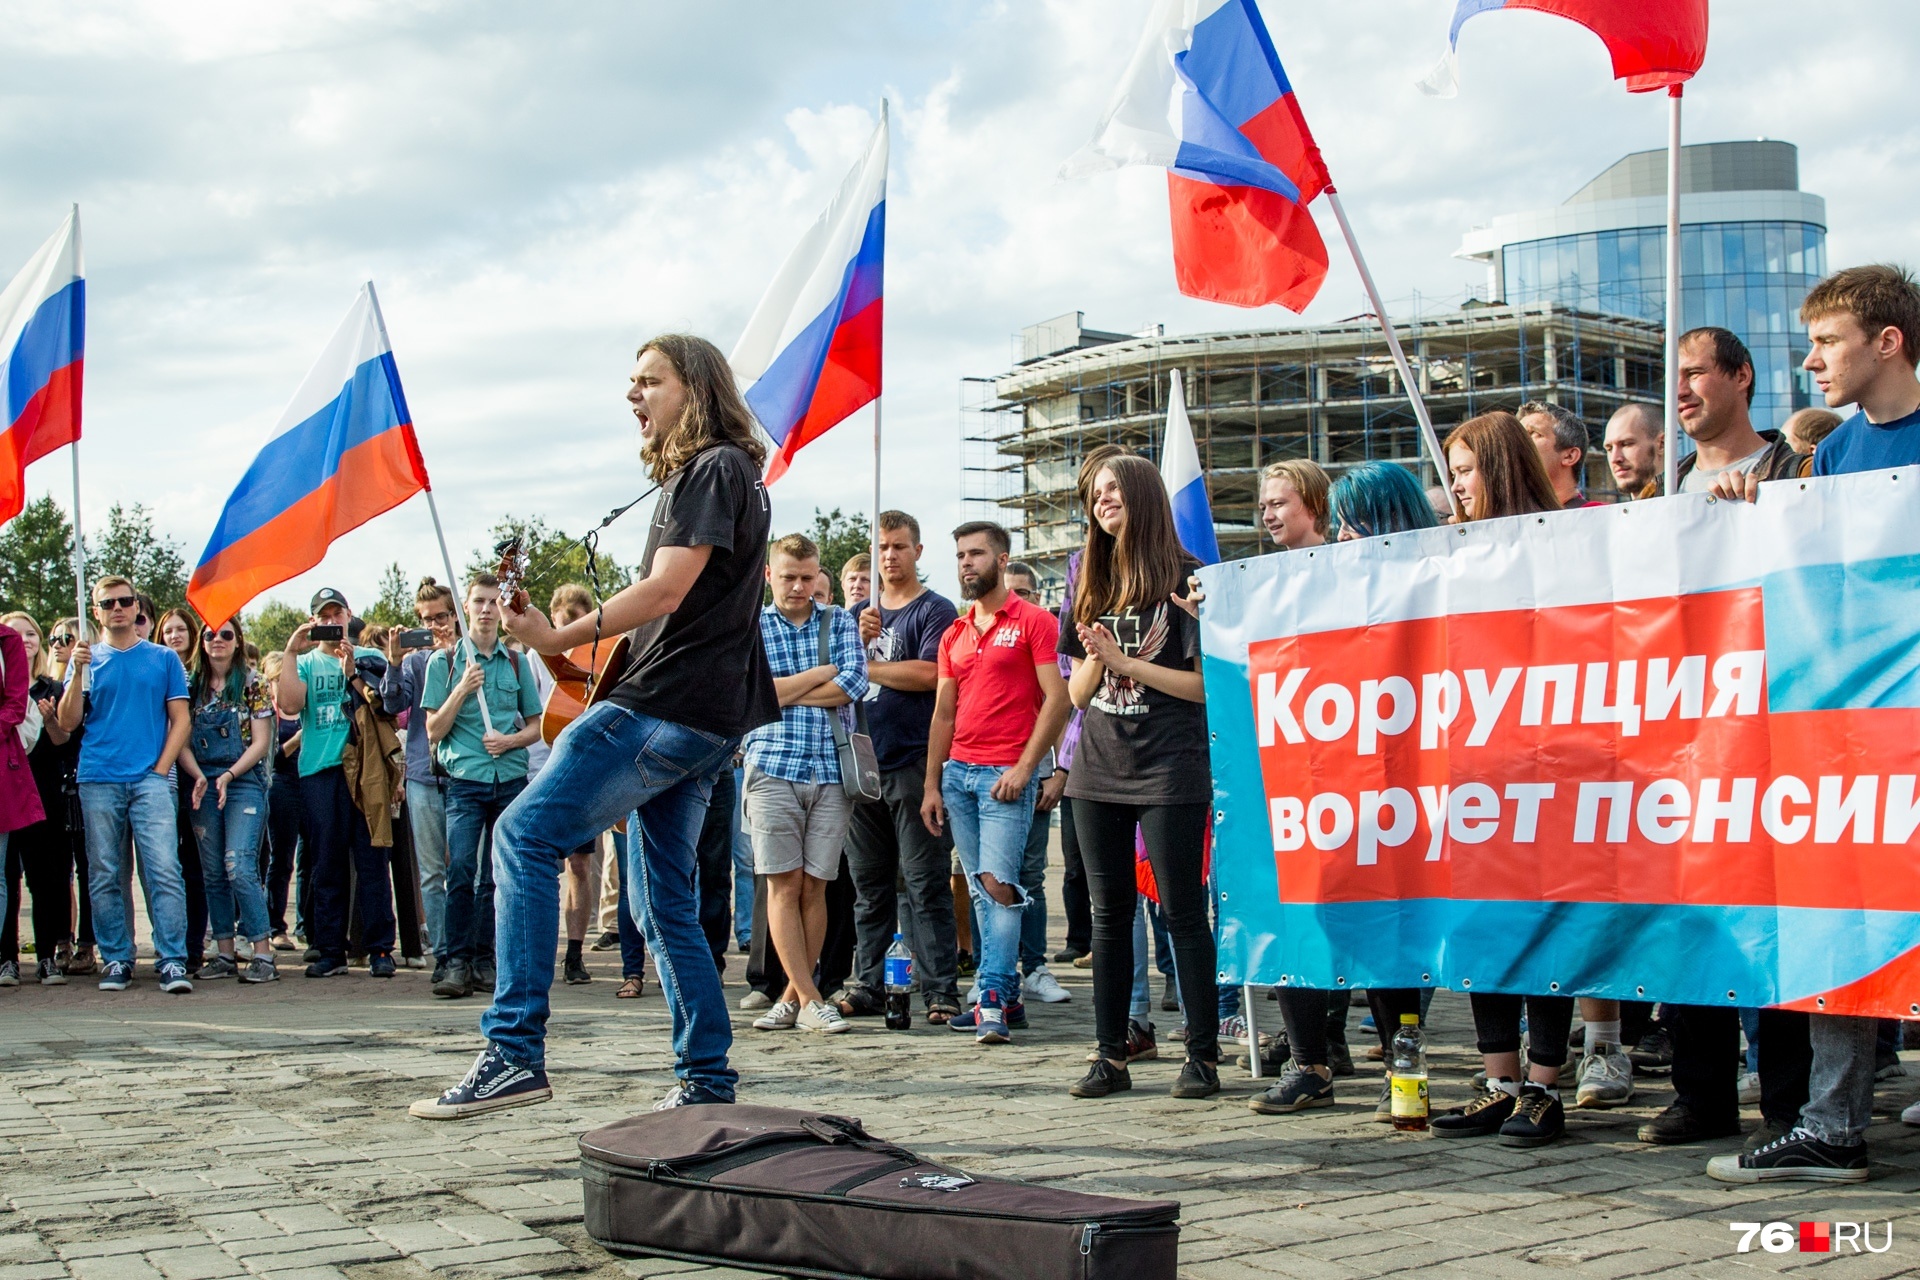 Завершилось шествие митингом и песней собственного сочинения от ярославского музыканта